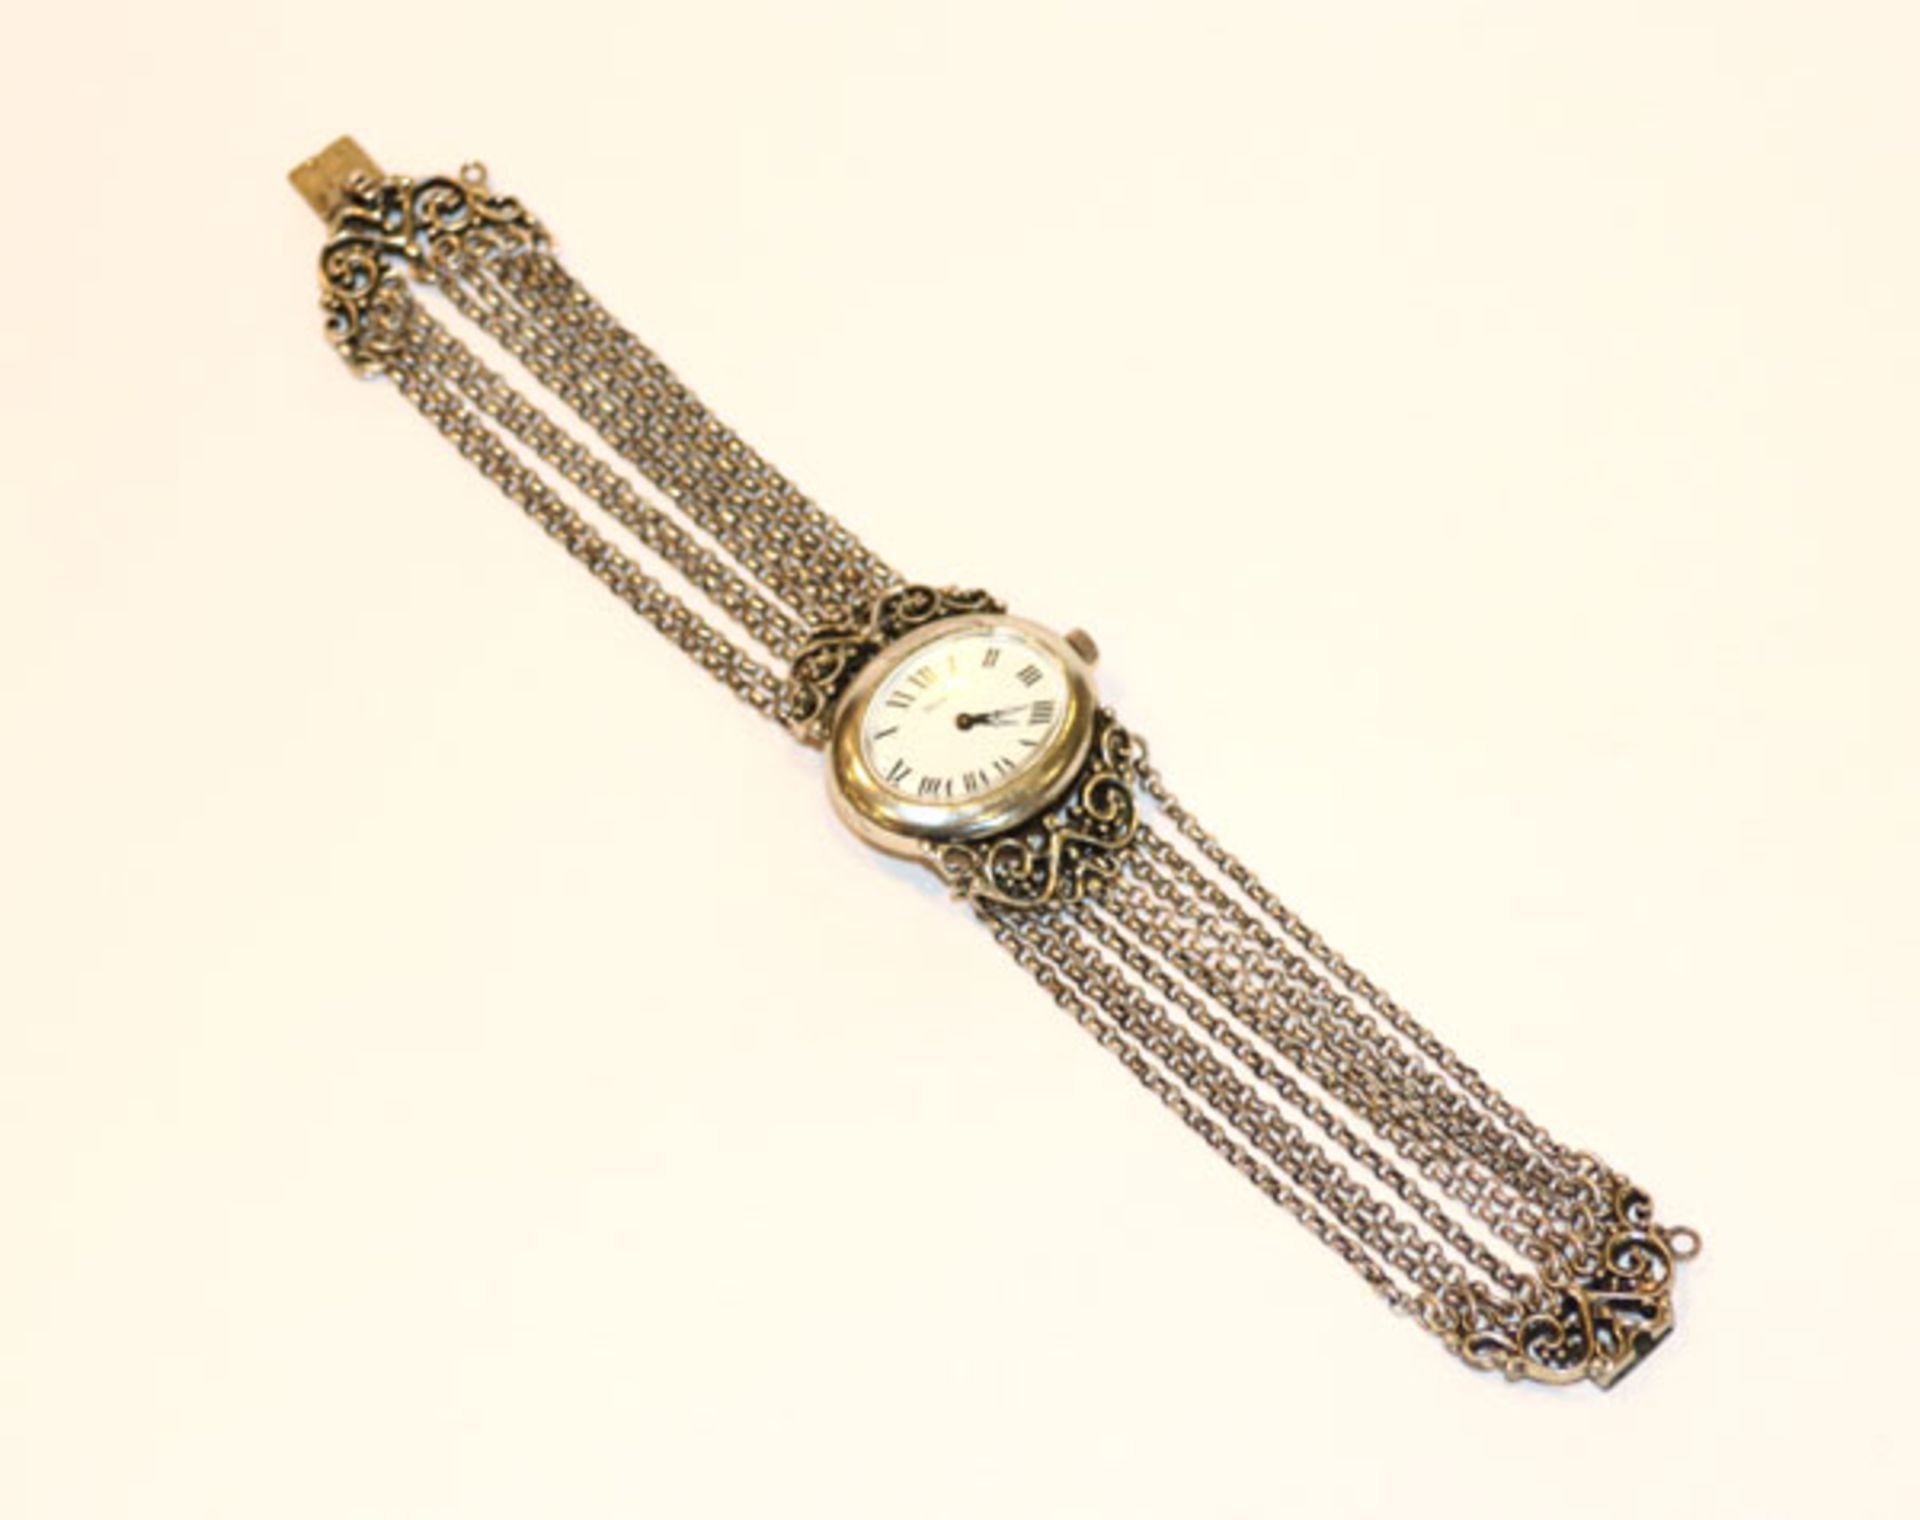 Mirabell, 800 Silber Trachten-Armbanduhr mit 9 Ketten, 50 gr., L 19 cm, Funktion nicht geprüft